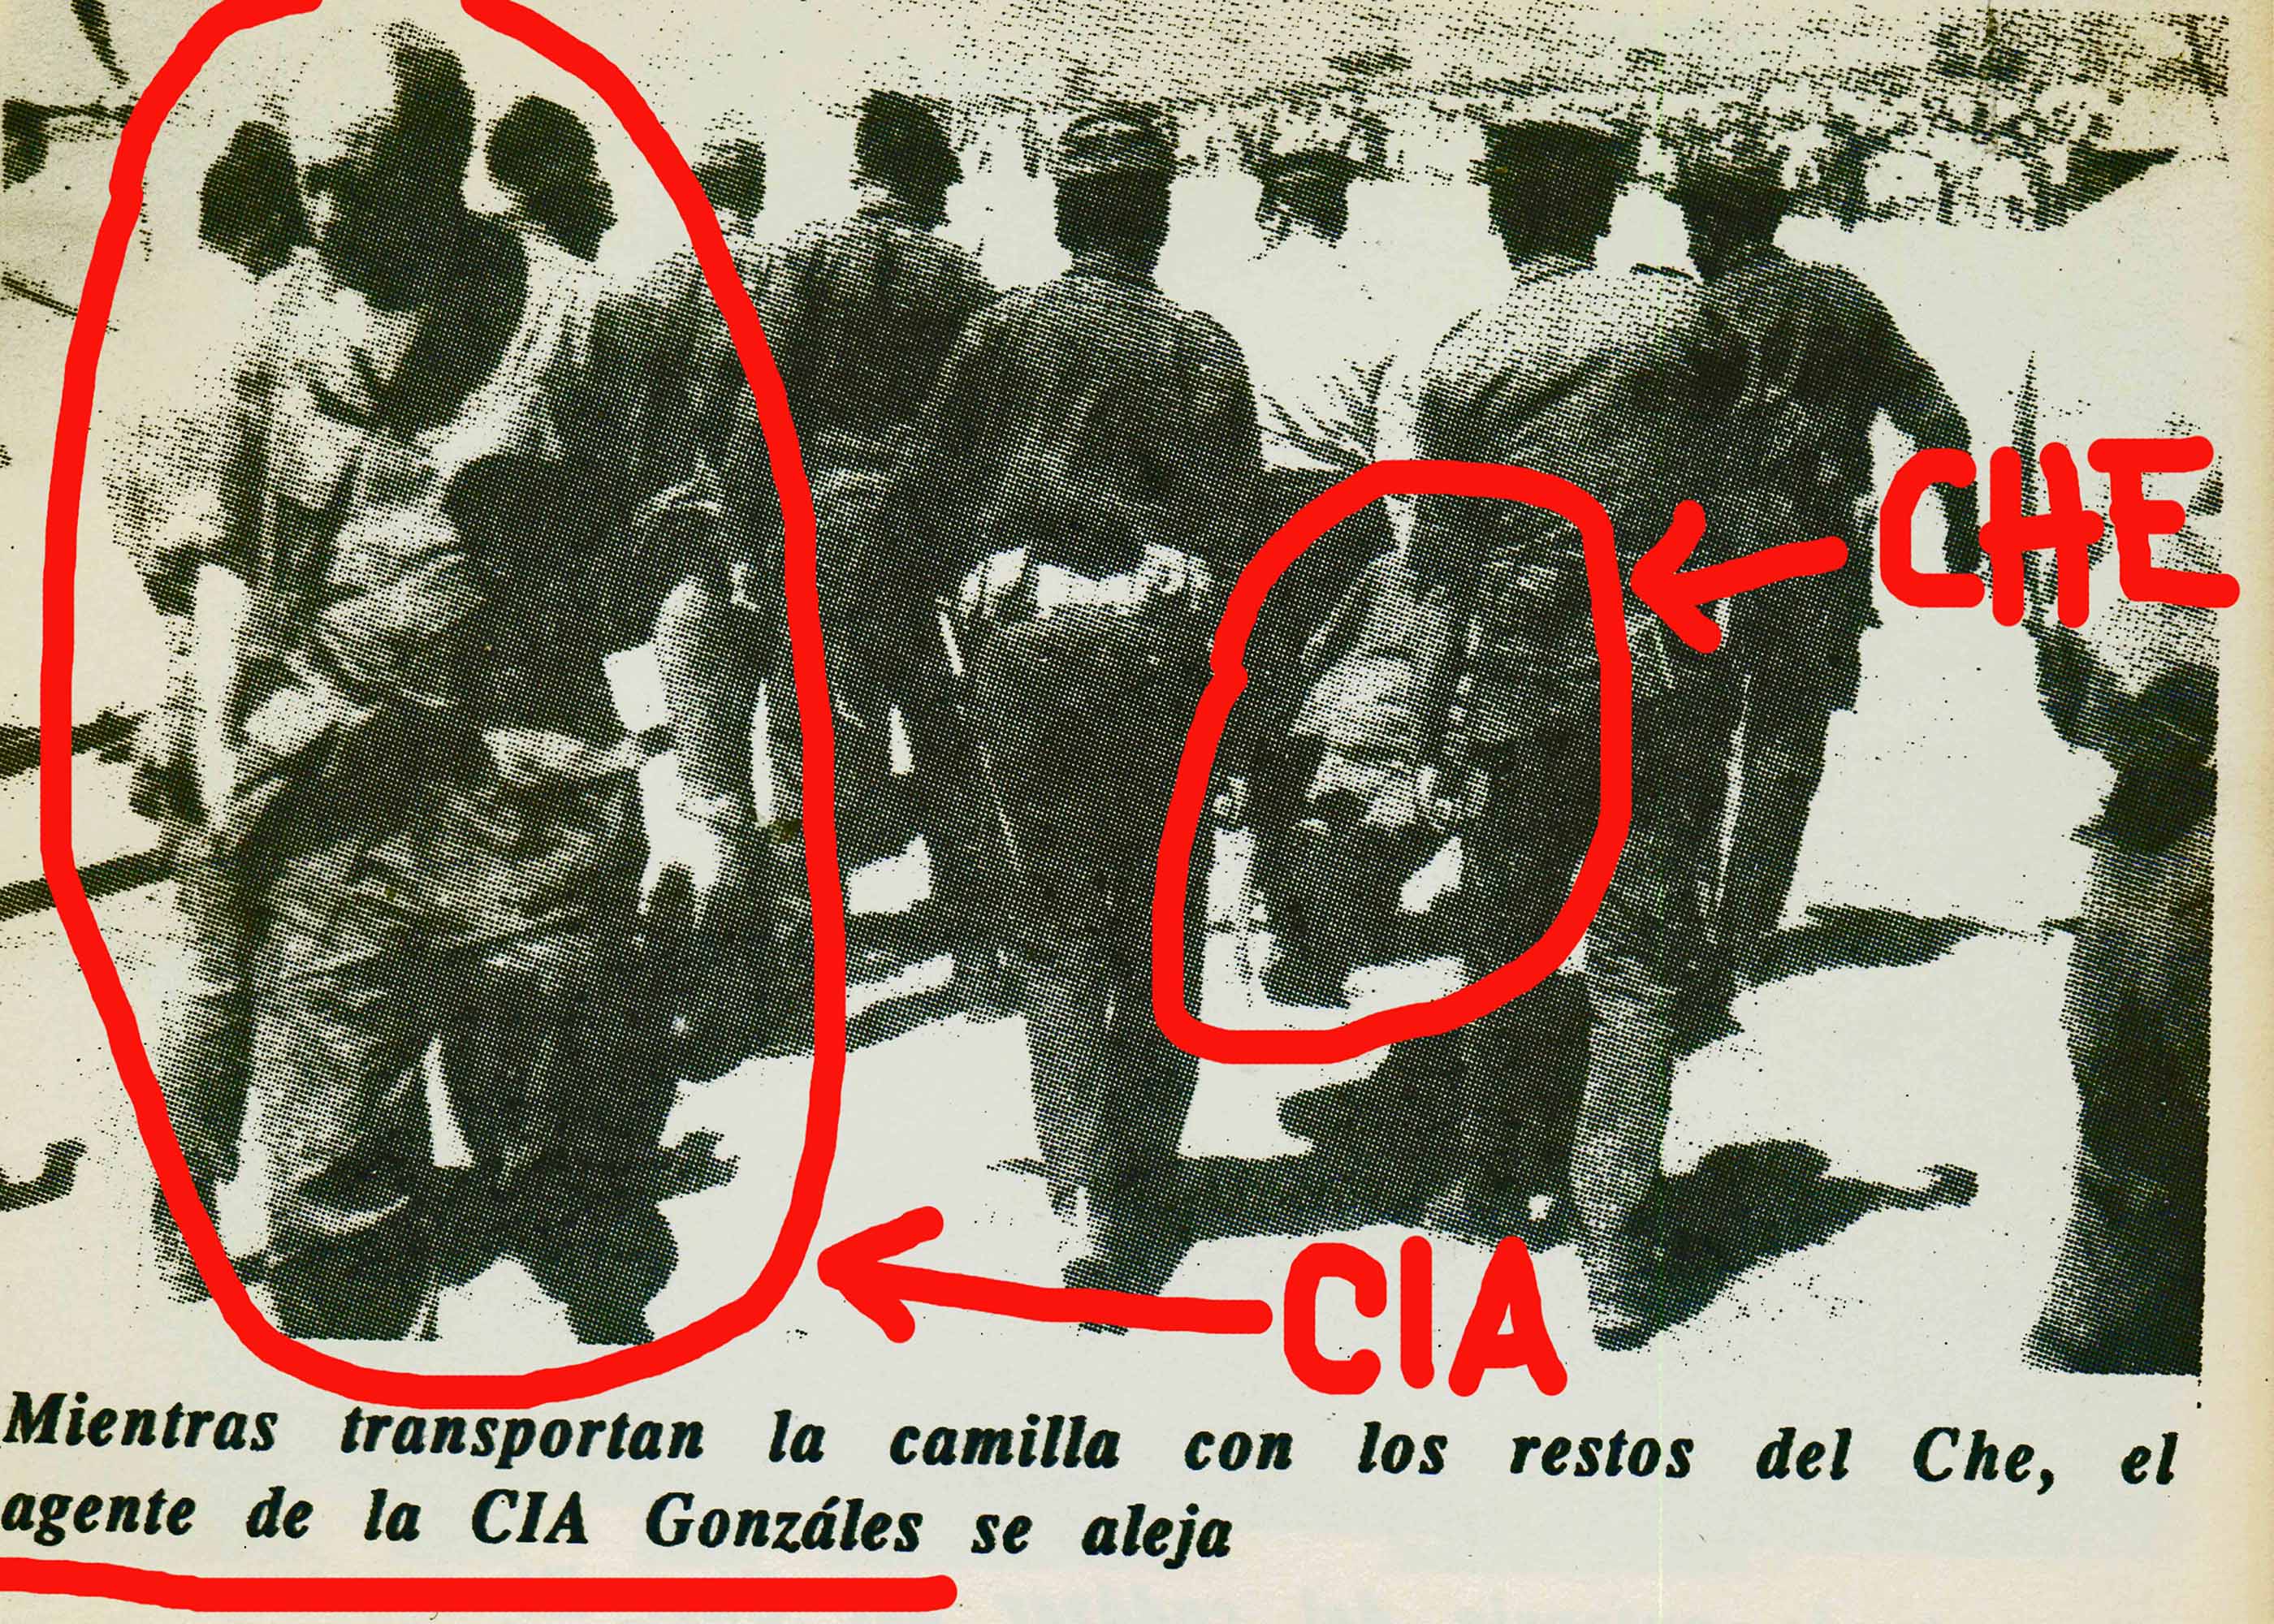 CIPEC (Centro de Investigación en Pensamiento Crítico) » [Fotos y videos] 50 aniversario del asesinato del Che Guevara en Bolivia